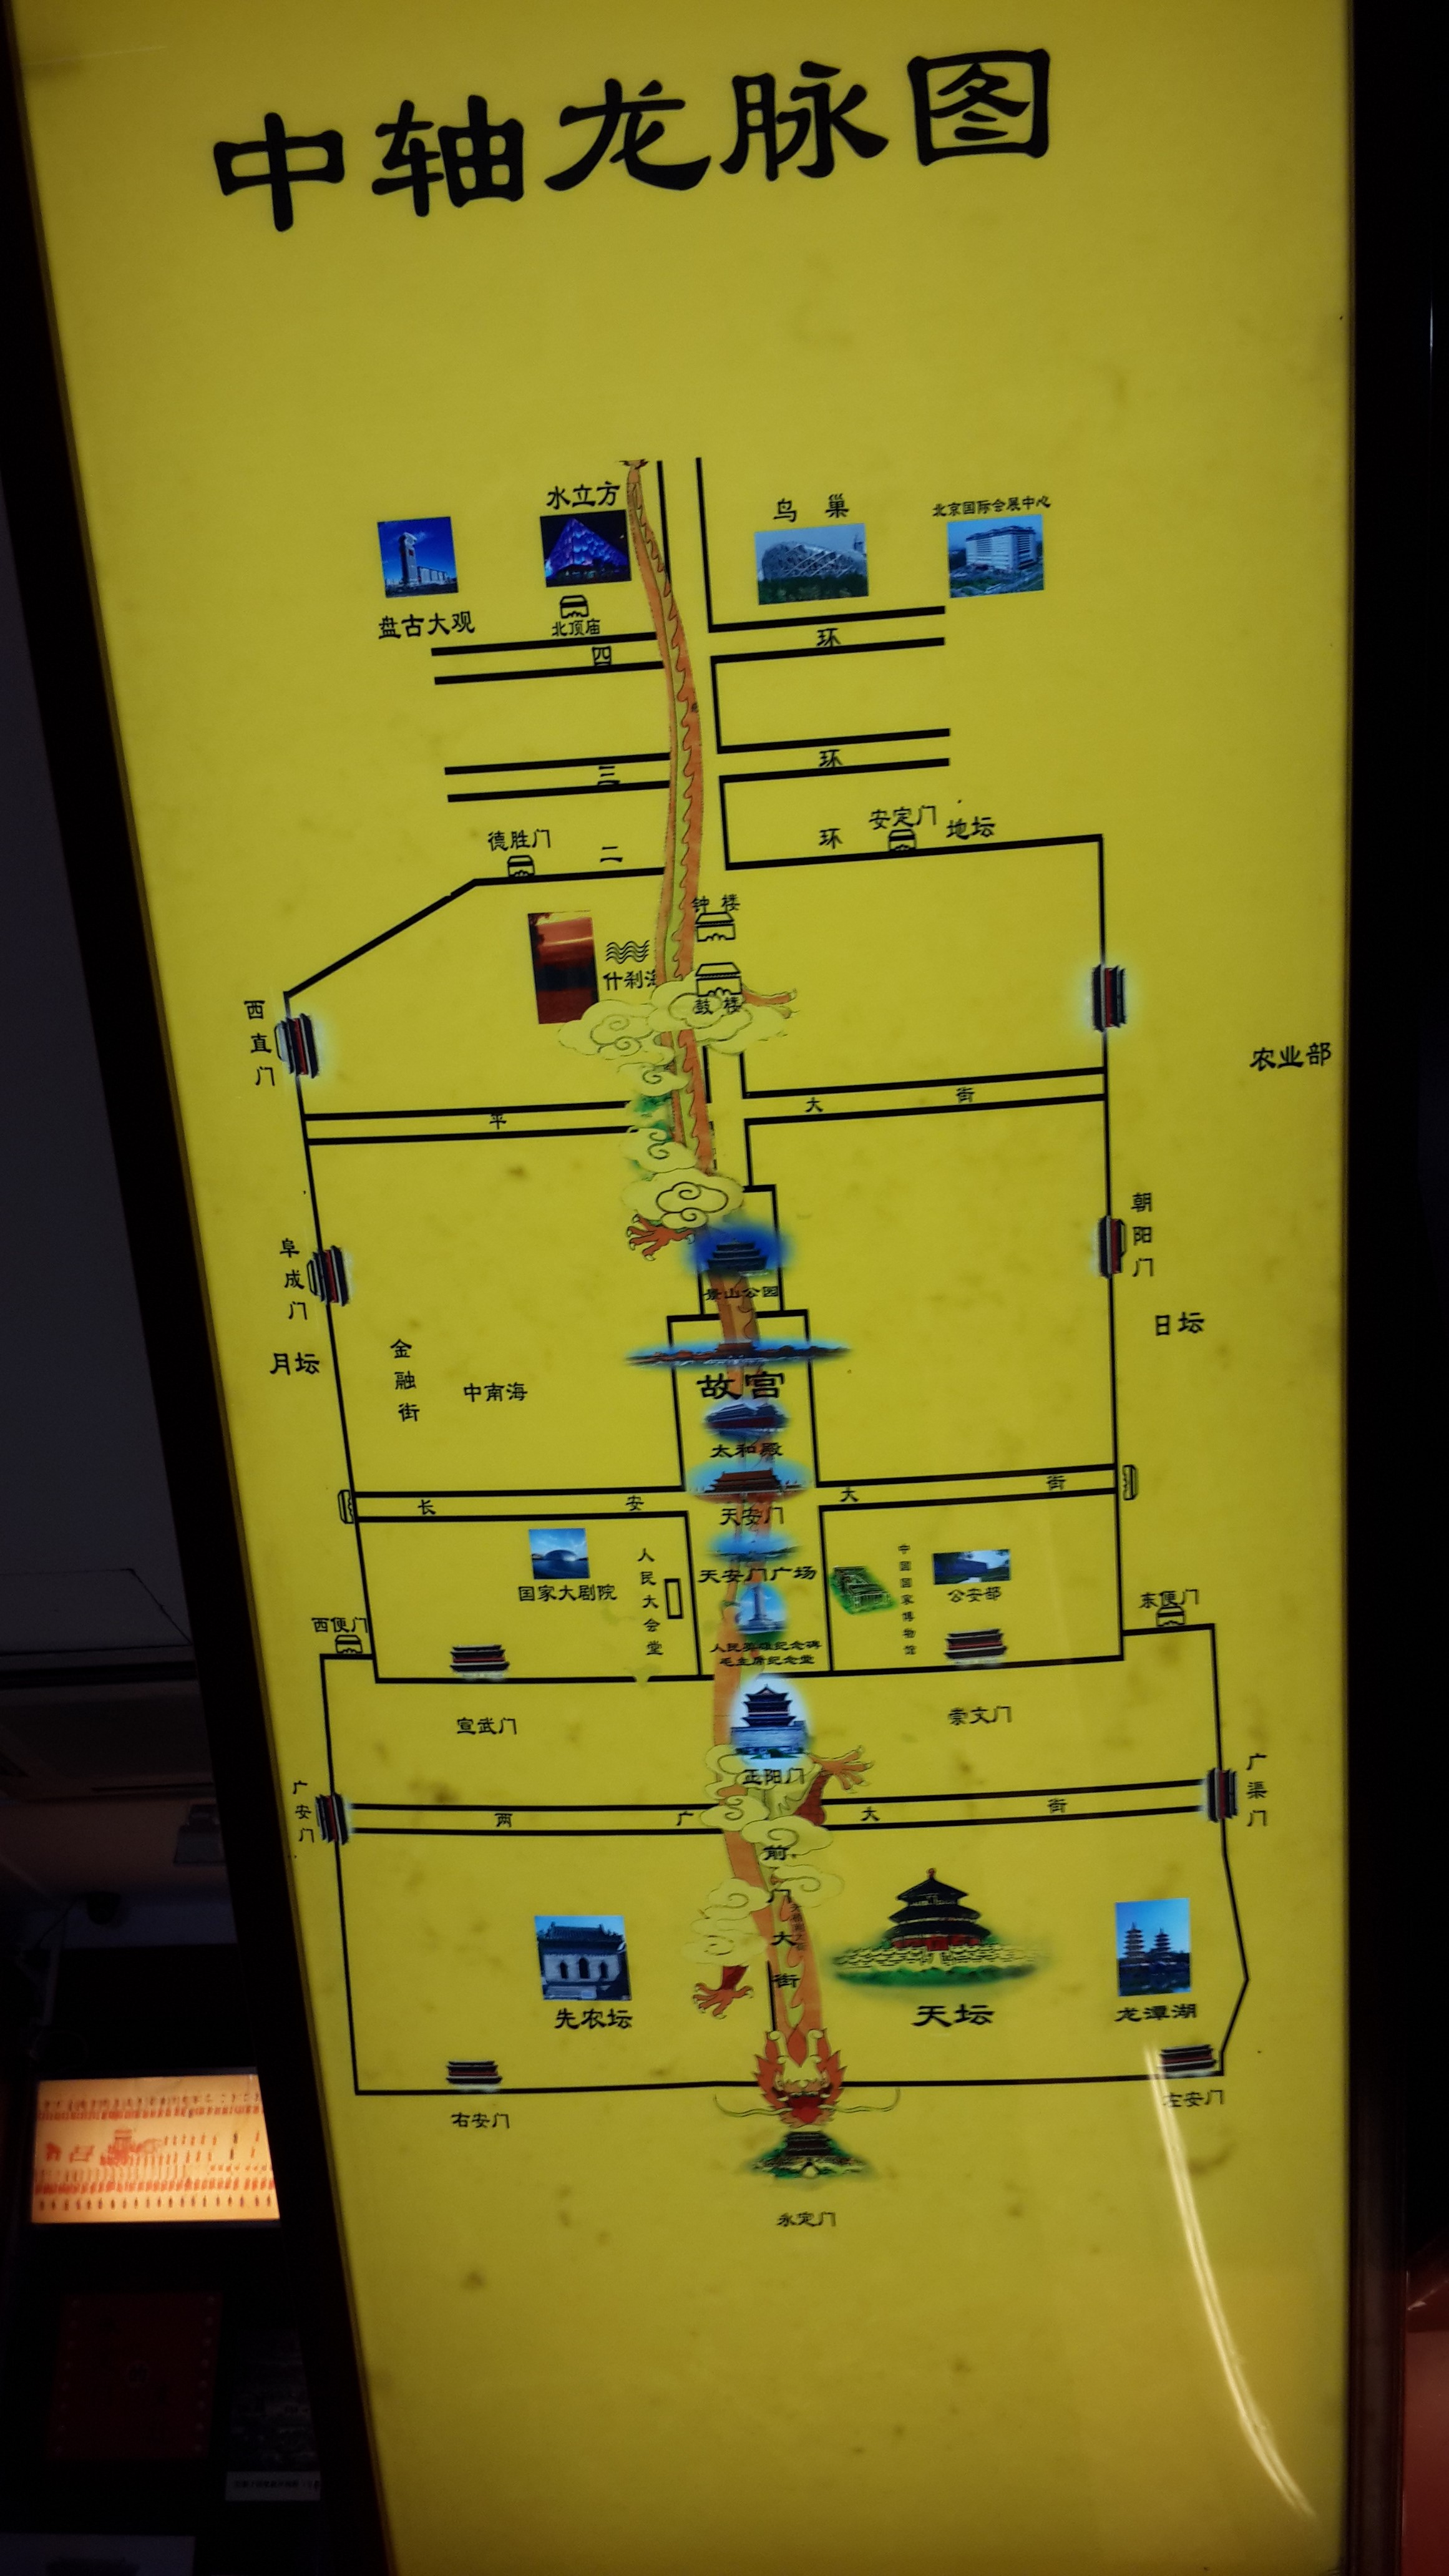 北京中轴线 简图图片